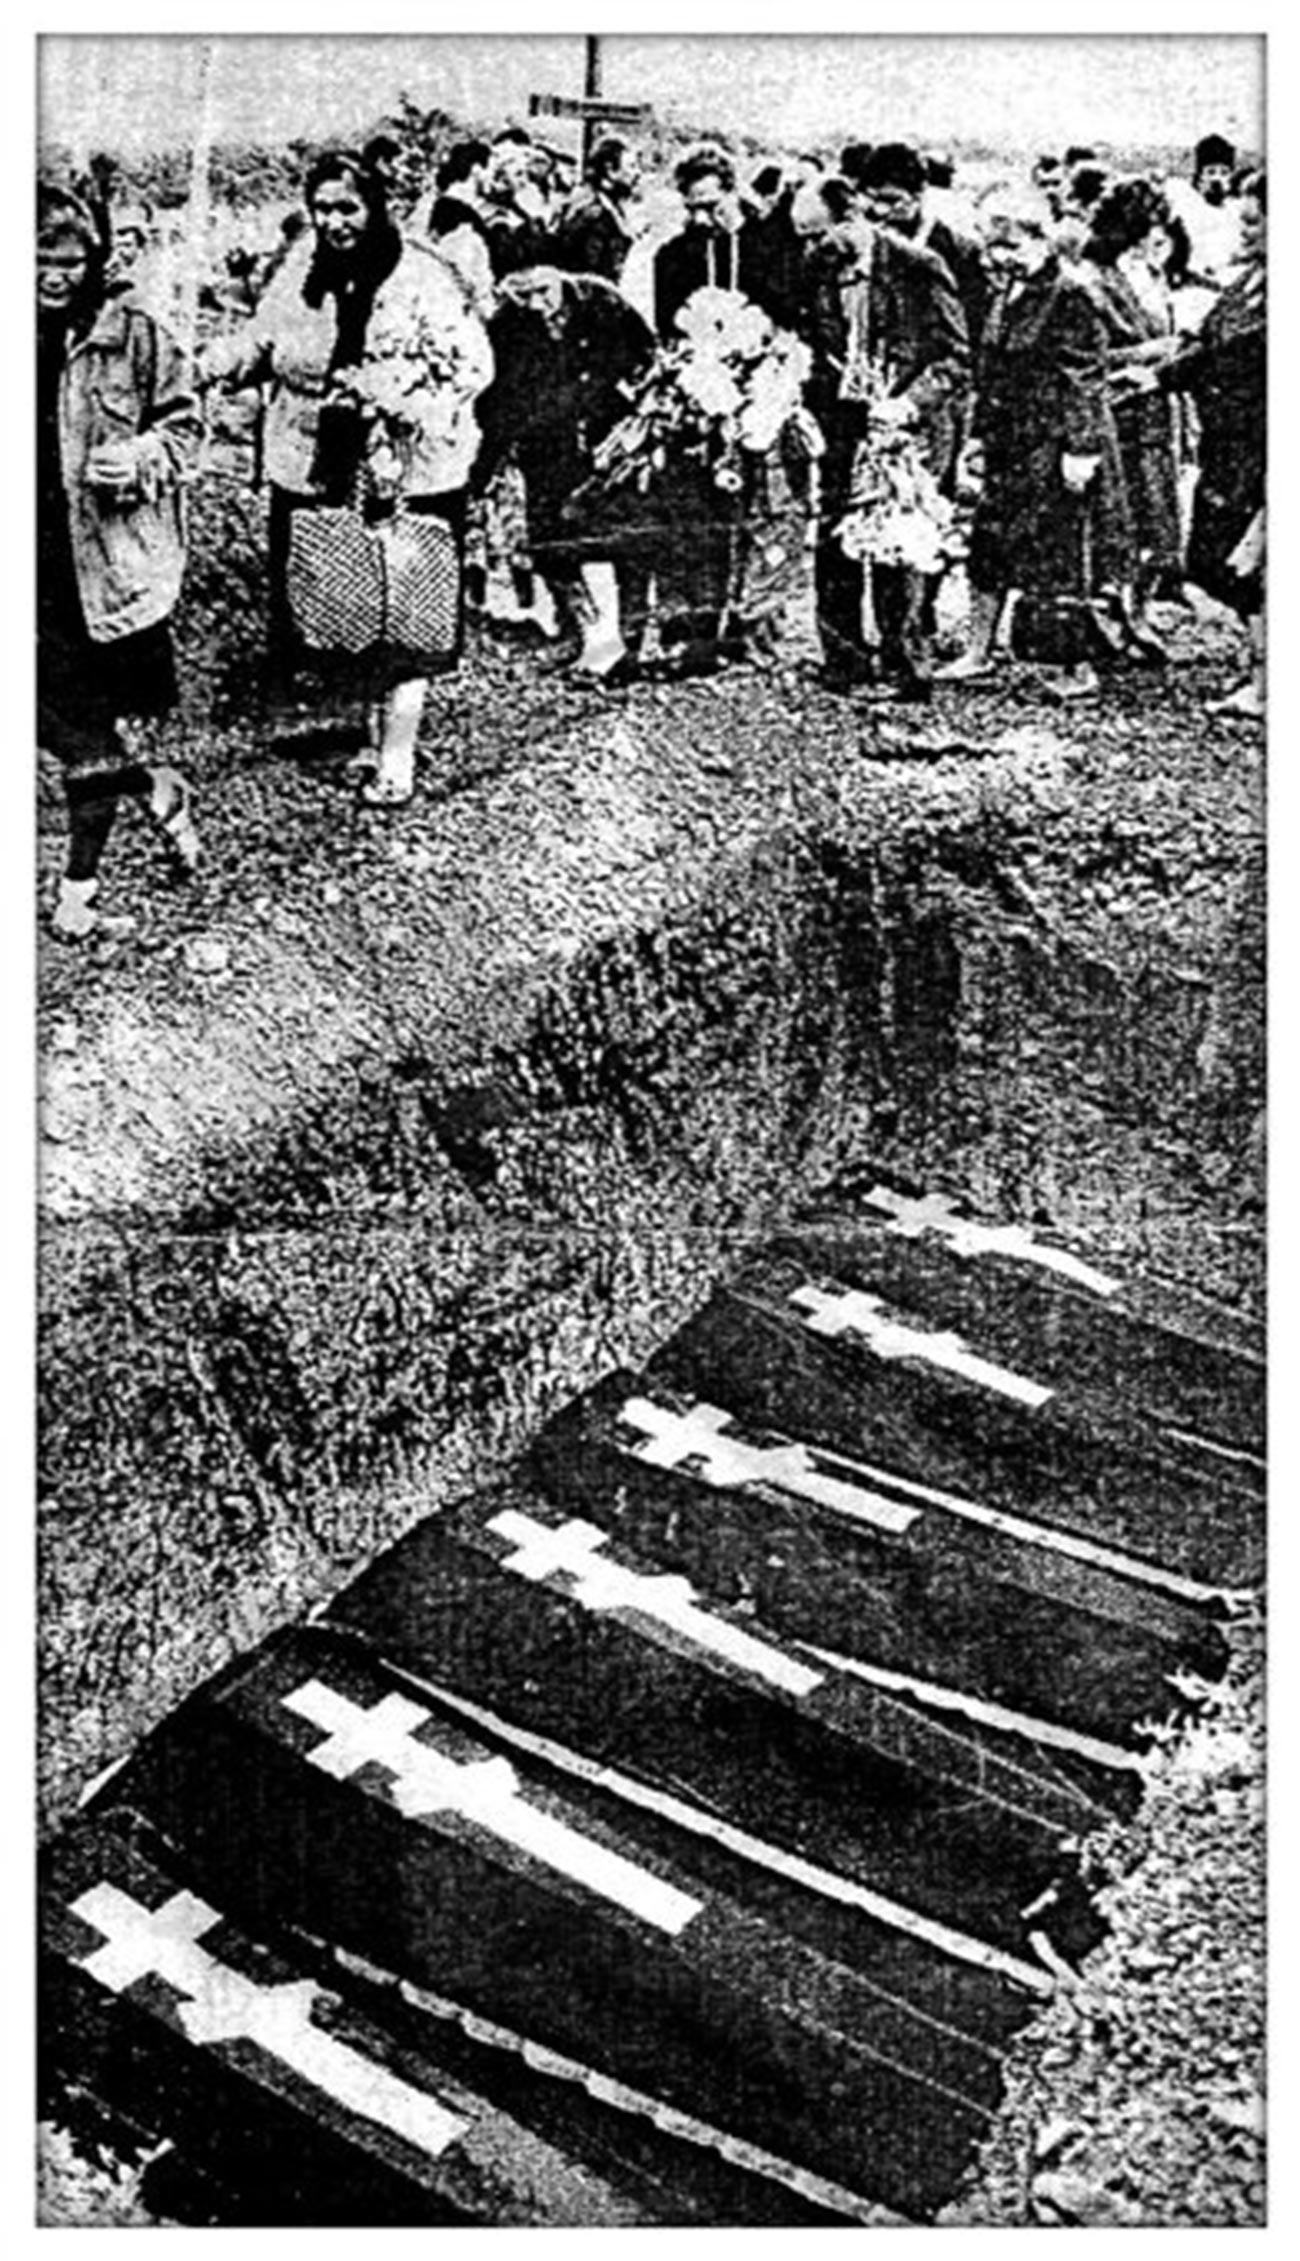 Penguburan kembali korban pembantaian 1962 secara simbolis di kuburan di Novocherkassk, 1994.